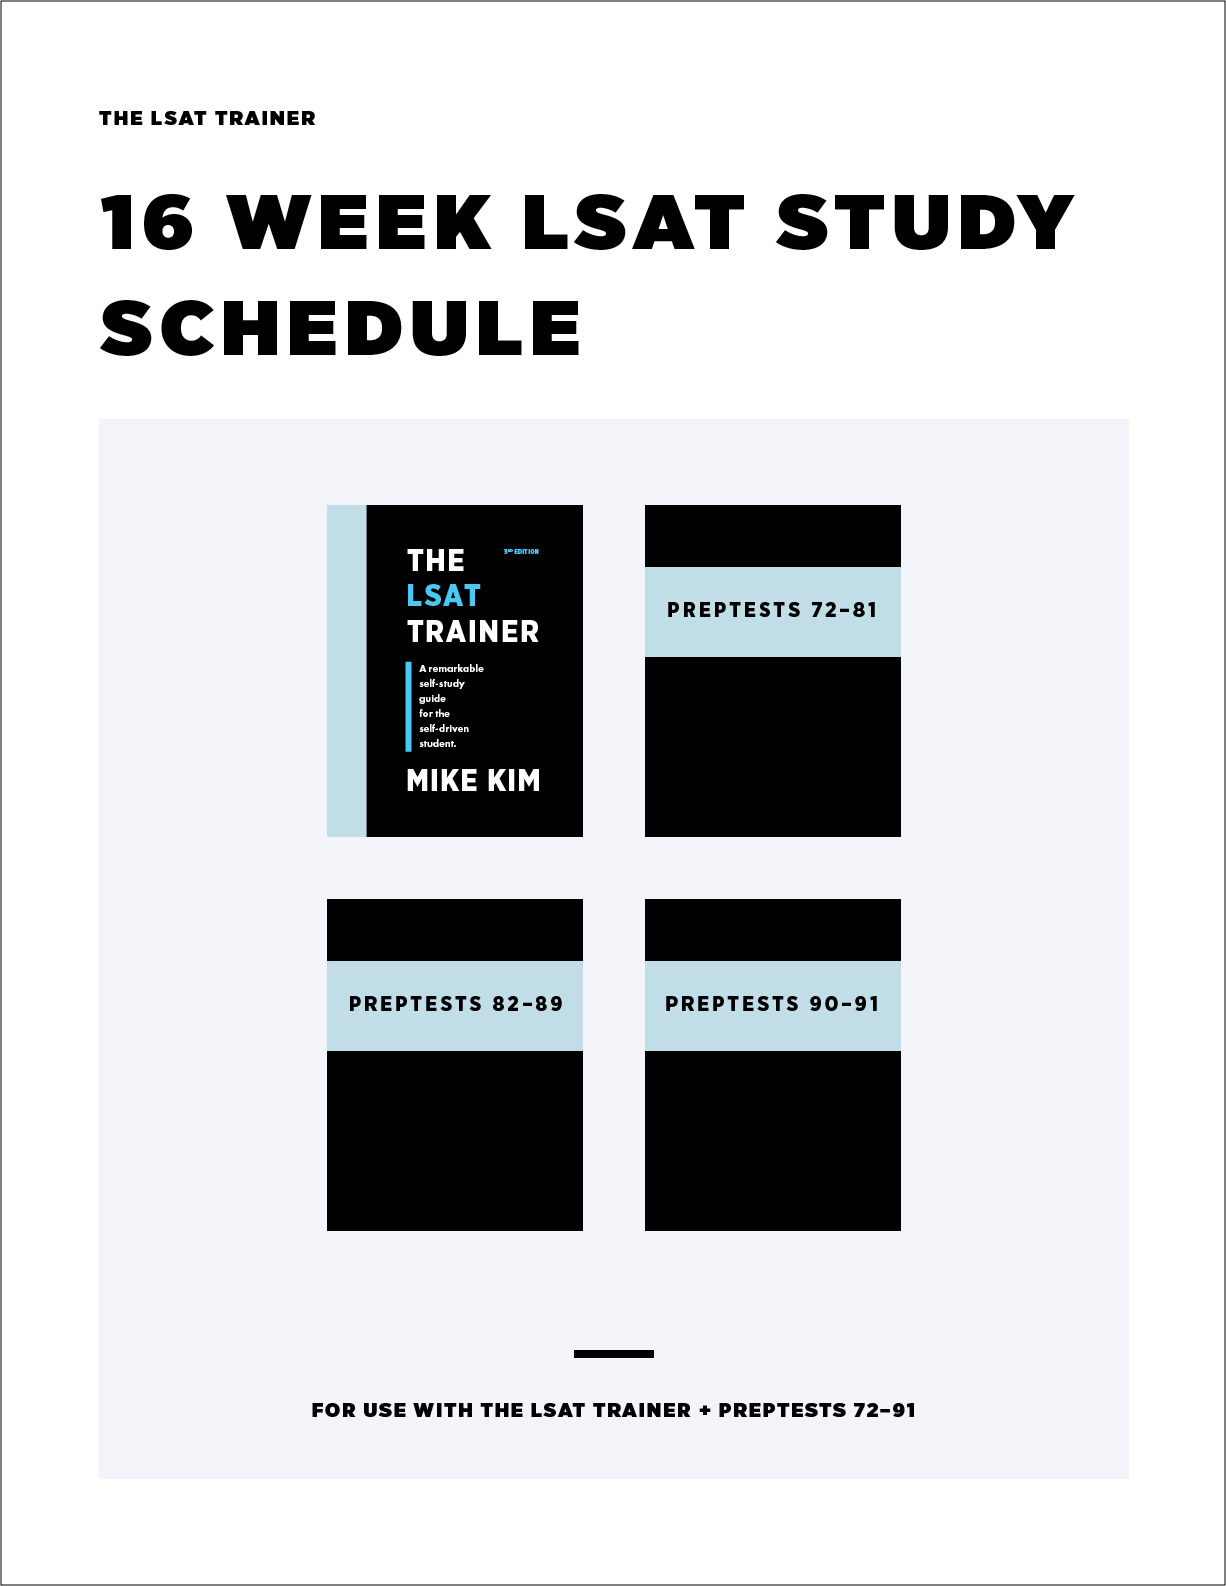 Study Schedule